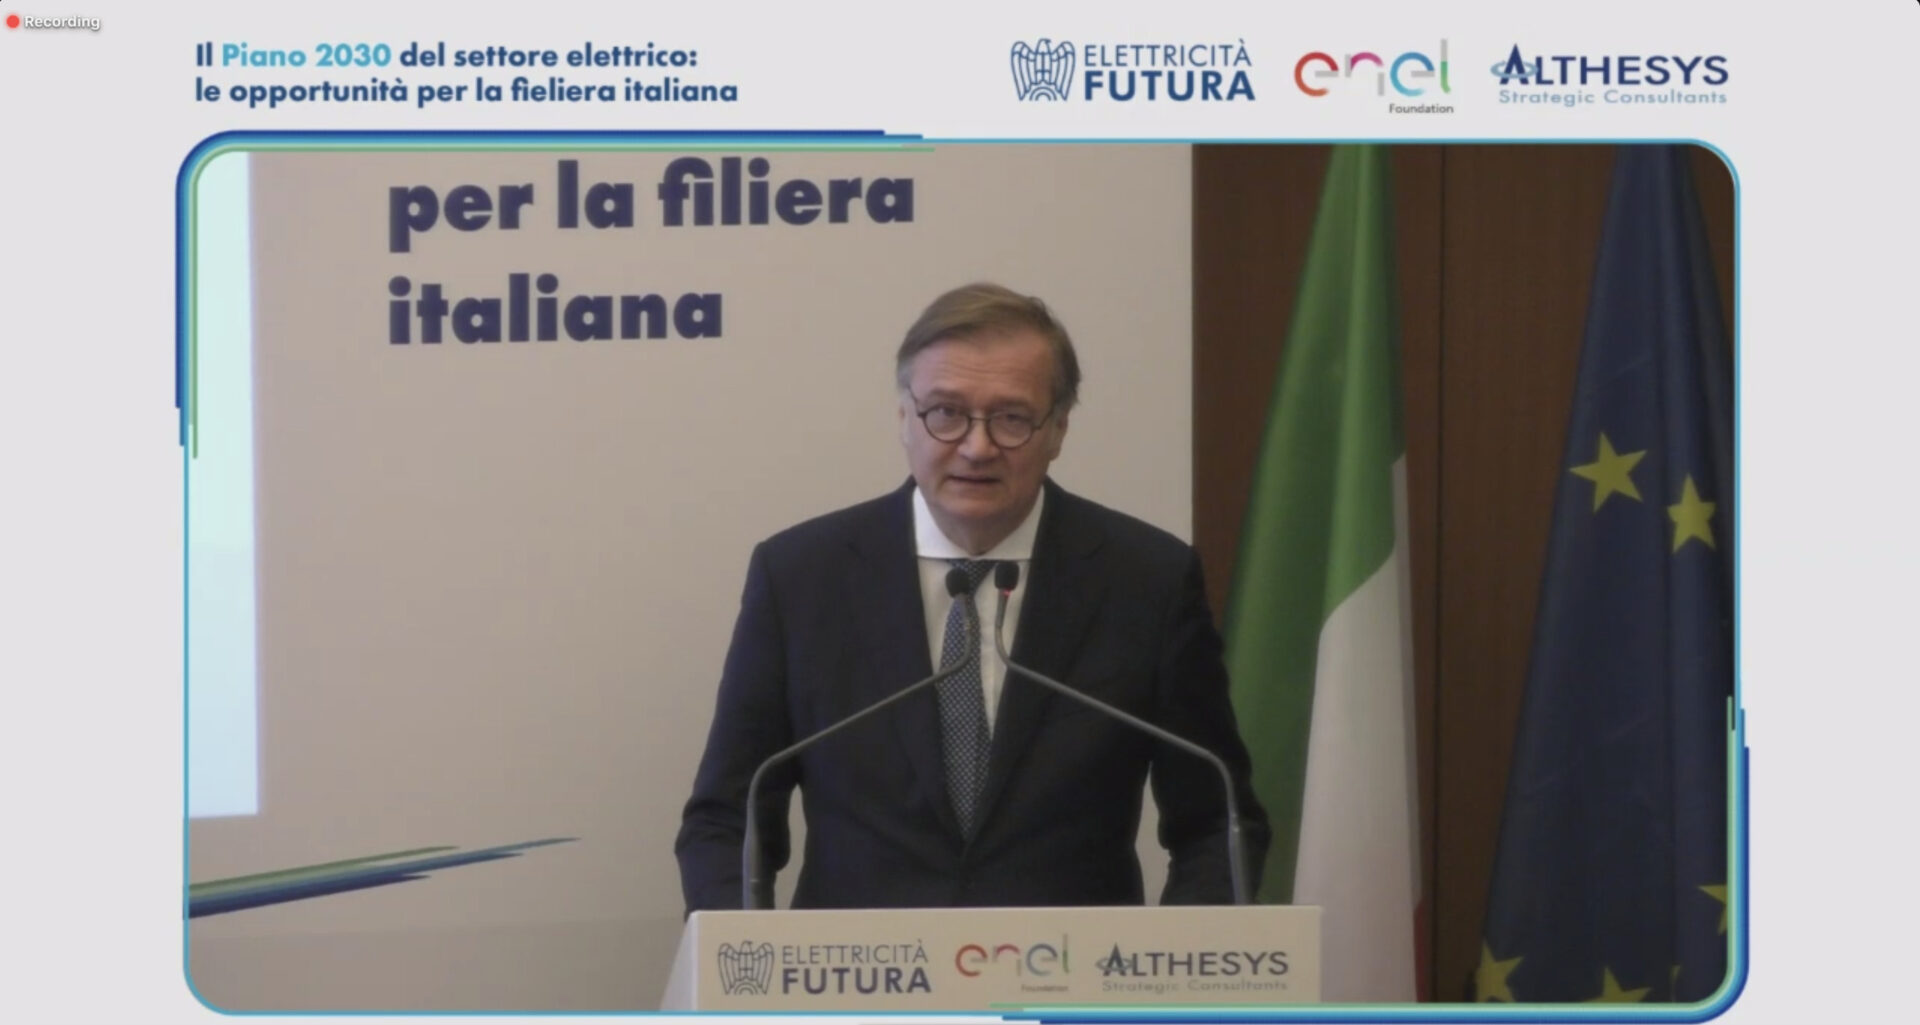 rinnovabili e filiera italiana, Elettricità Futura